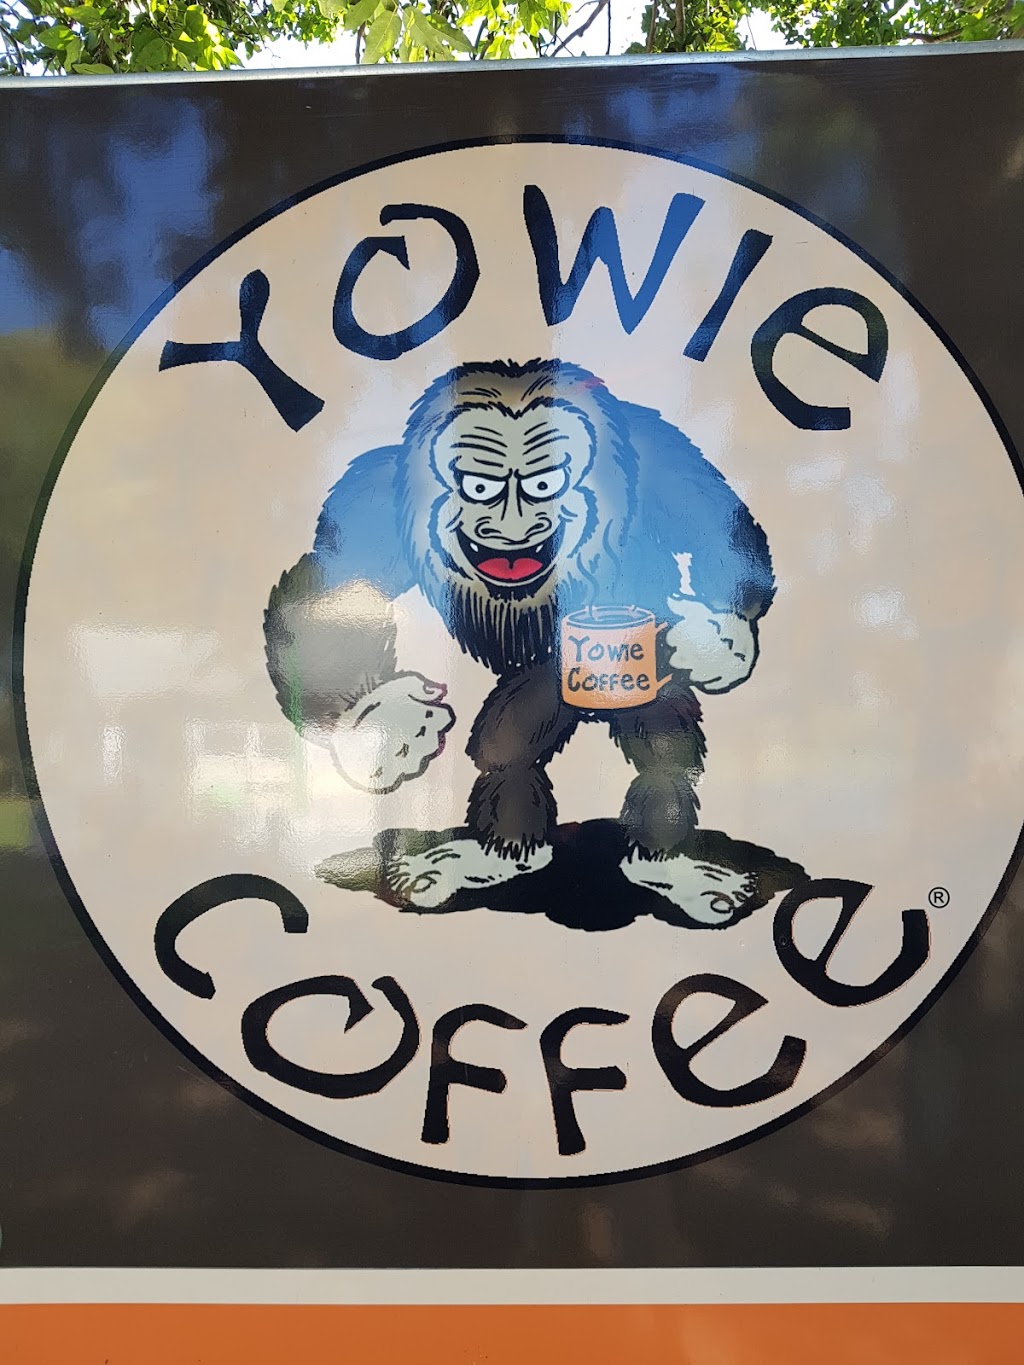 Yowie Coffee | food | Yowie Park, Kilcoy QLD 4515, Australia | 0400540015 OR +61 400 540 015